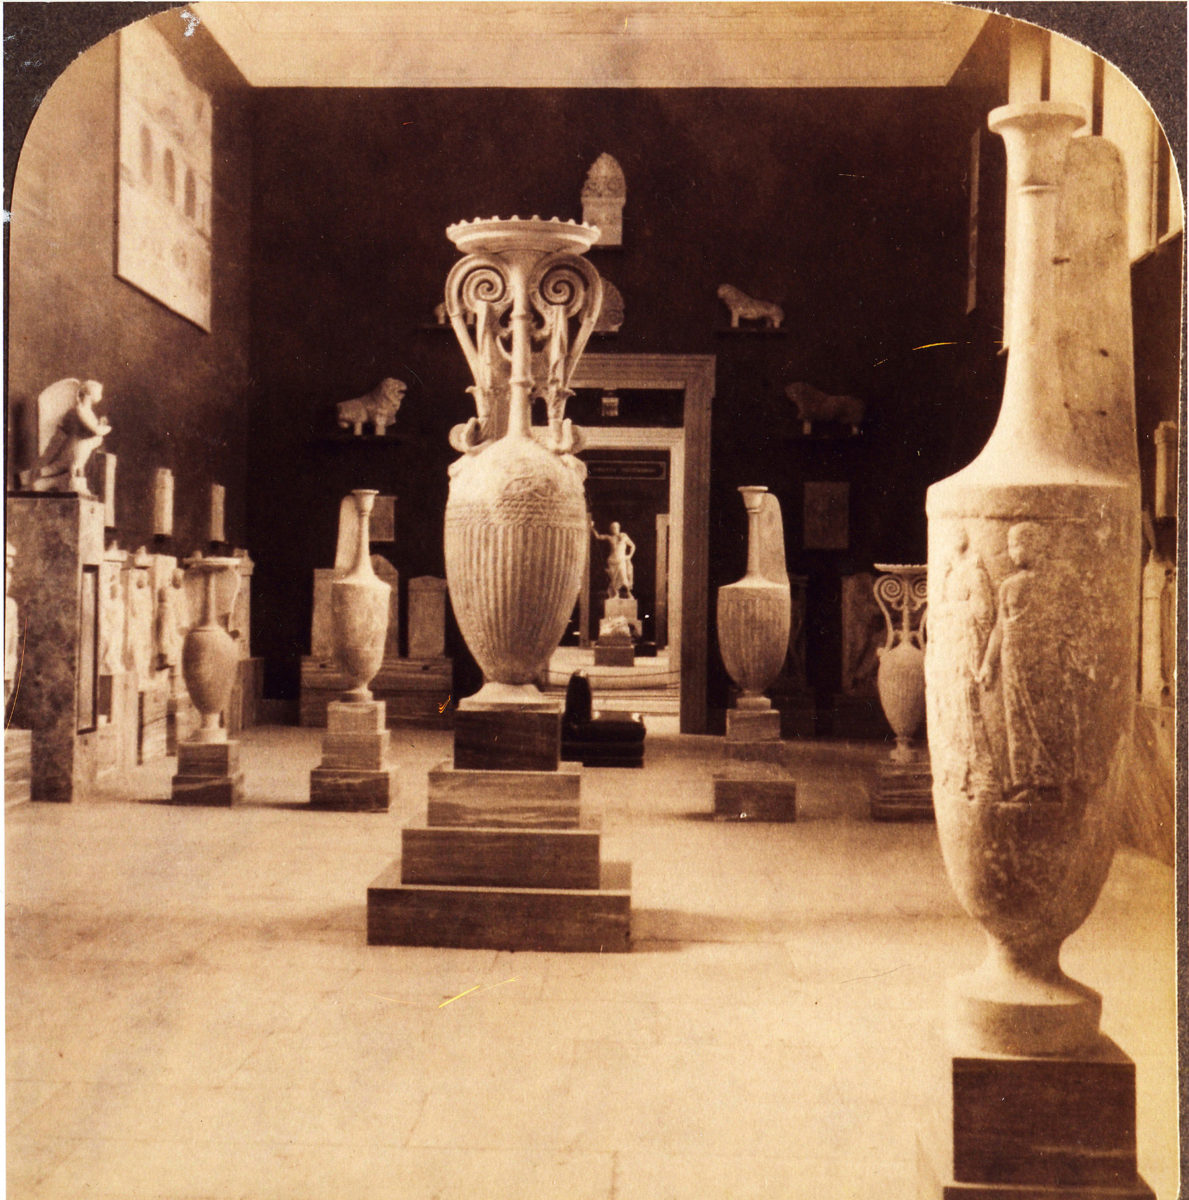 Εθνικό Αρχαιολογικό Μουσείο, πρώτο μισό 20ού αιώνα. Αίθουσα Επιτύμβιων Γλυπτών υστεροκλασικών χρόνων. Ψηφιοποιημένο αντίγραφο εκτυπωμένης φωτογραφίας (© Φωτογραφικό Αρχείο, Εθνικό Αρχαιολογικό Μουσείο).